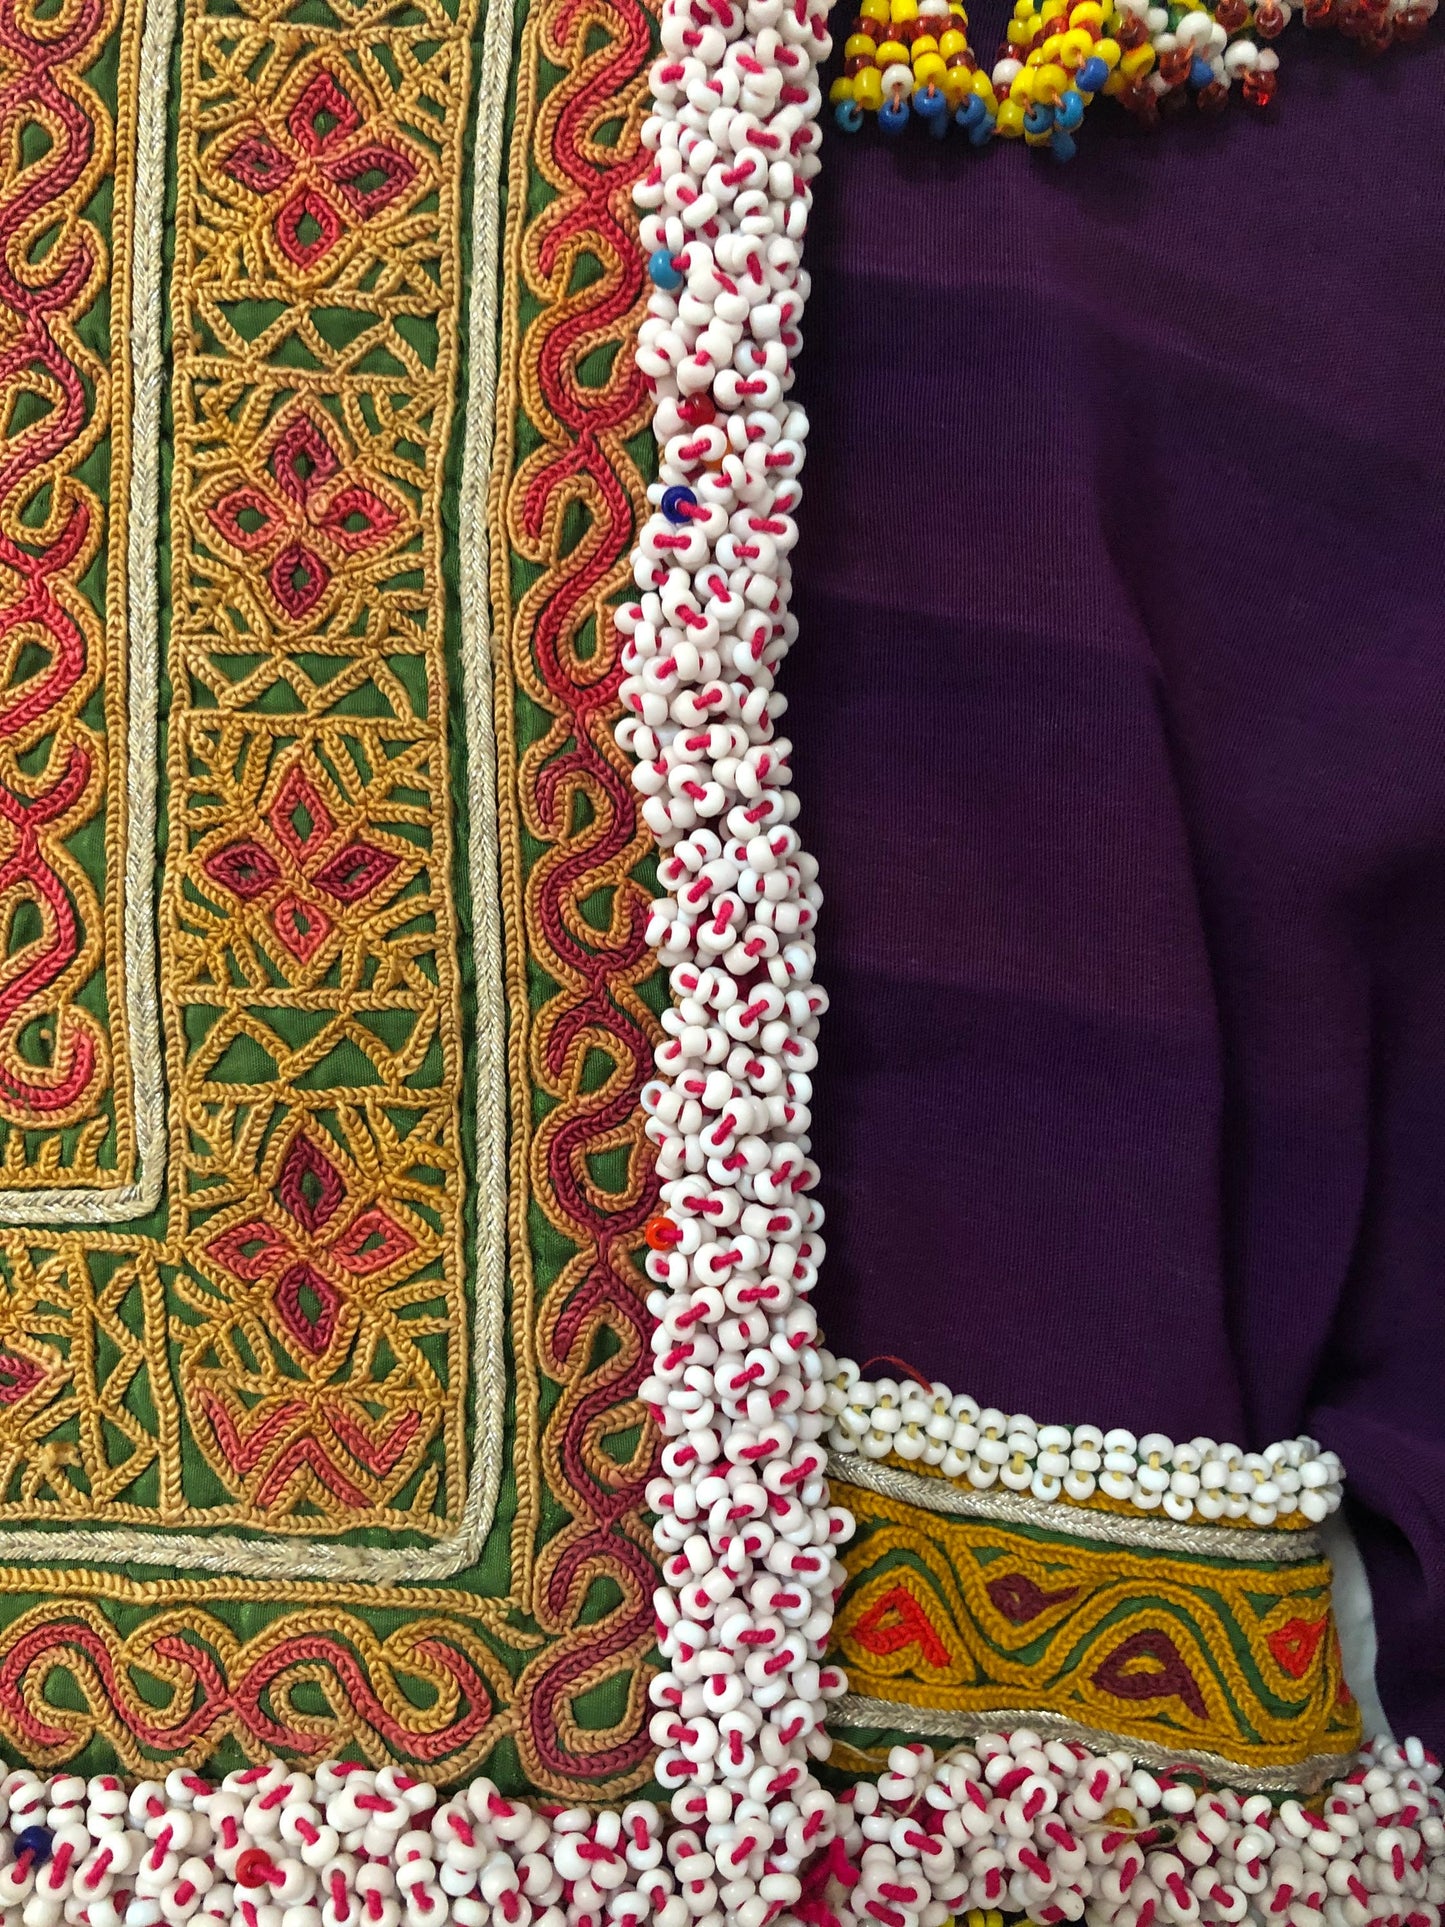 Vintage Afghani Kutchi Handmade Hand Embroidered Dress Wall Art